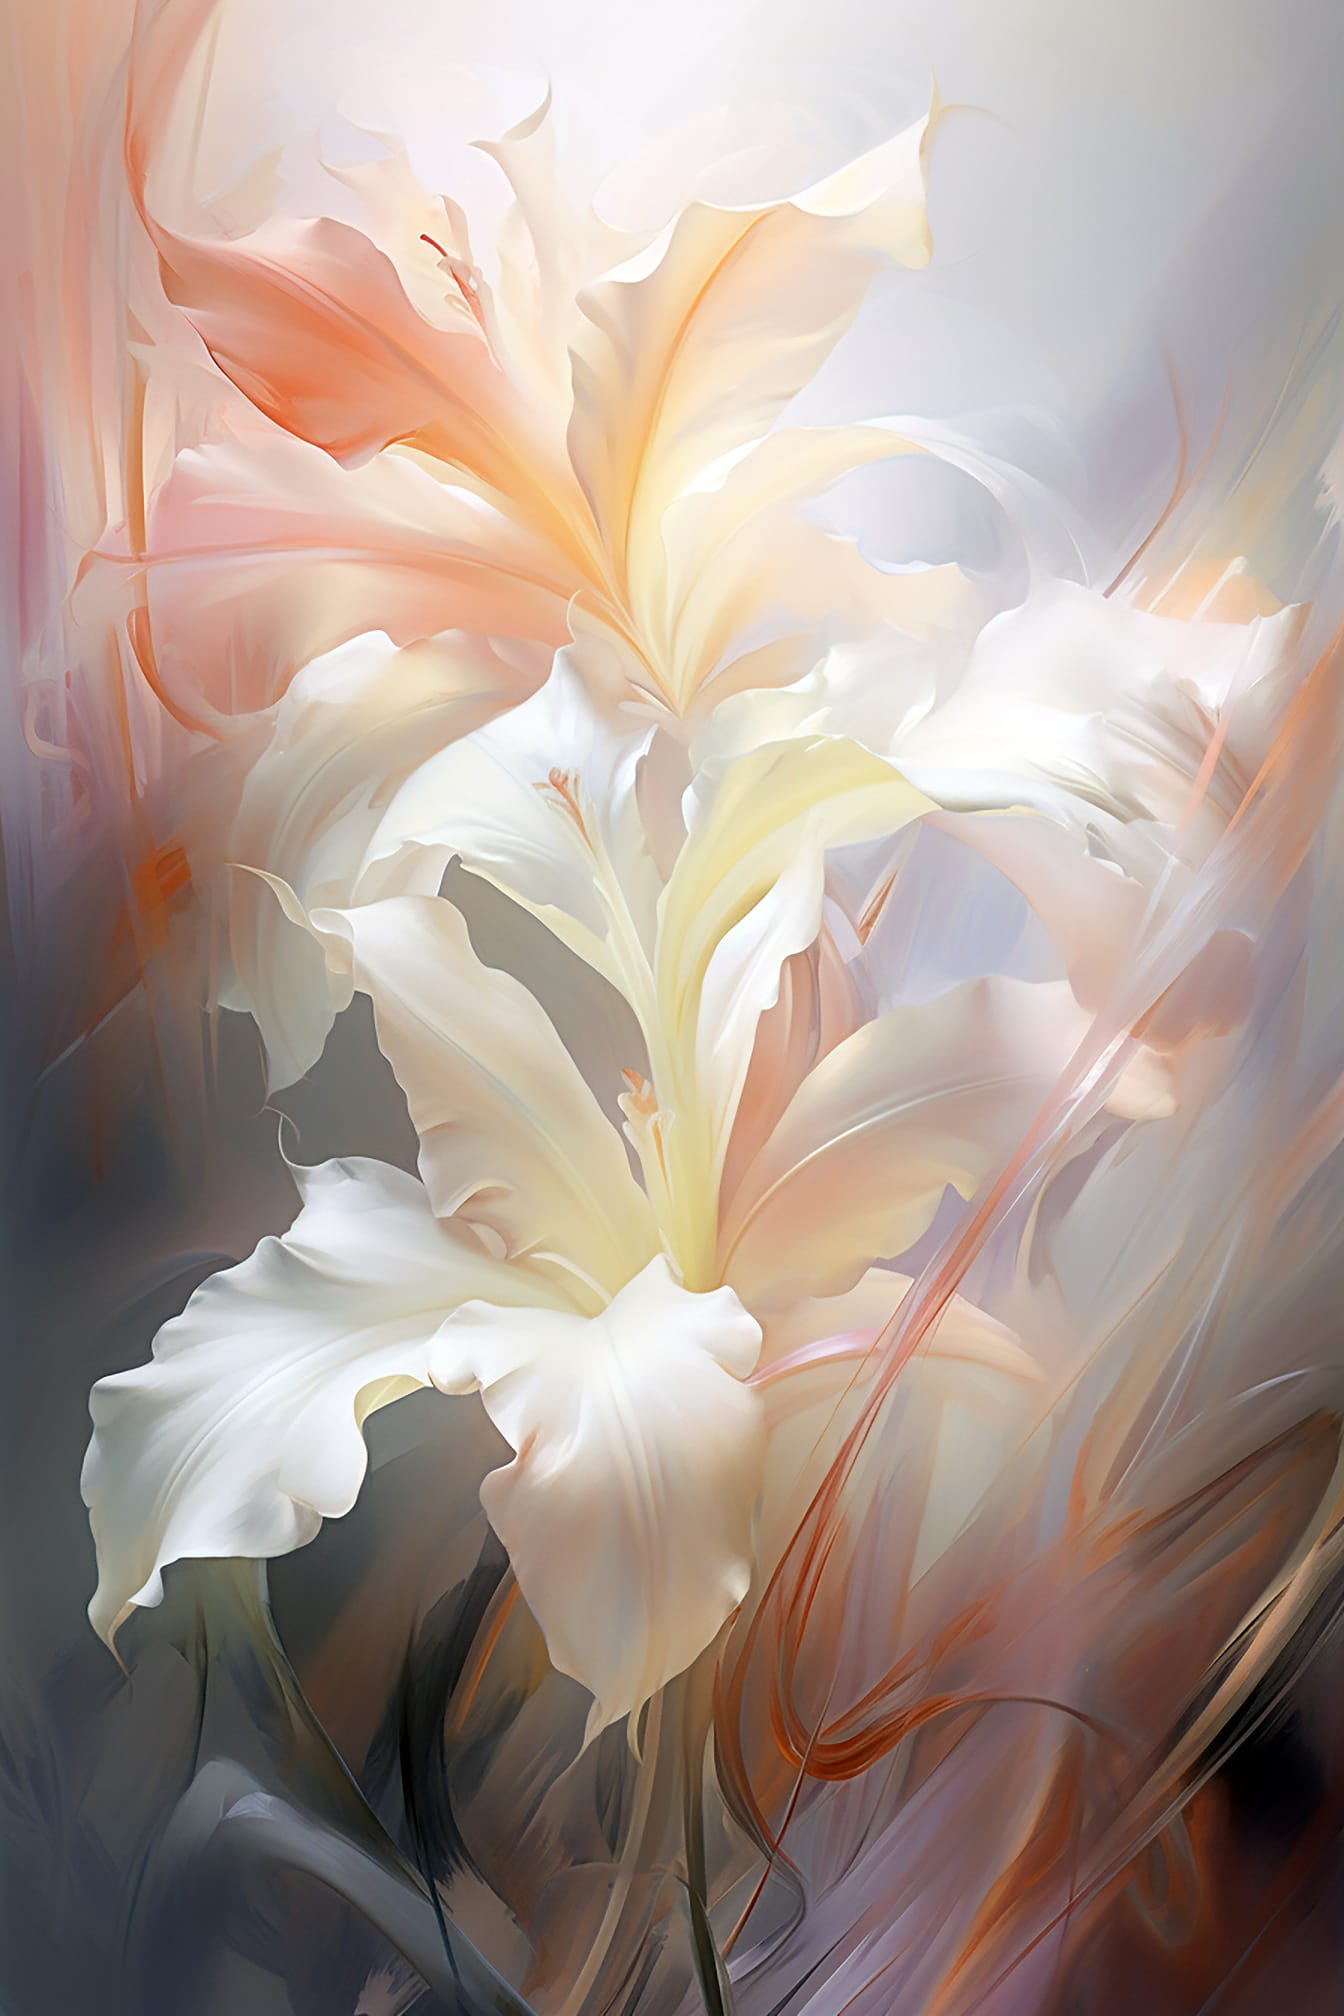 Ilustração artística abstrata de pétalas de flores brancas em estilo de belas artes